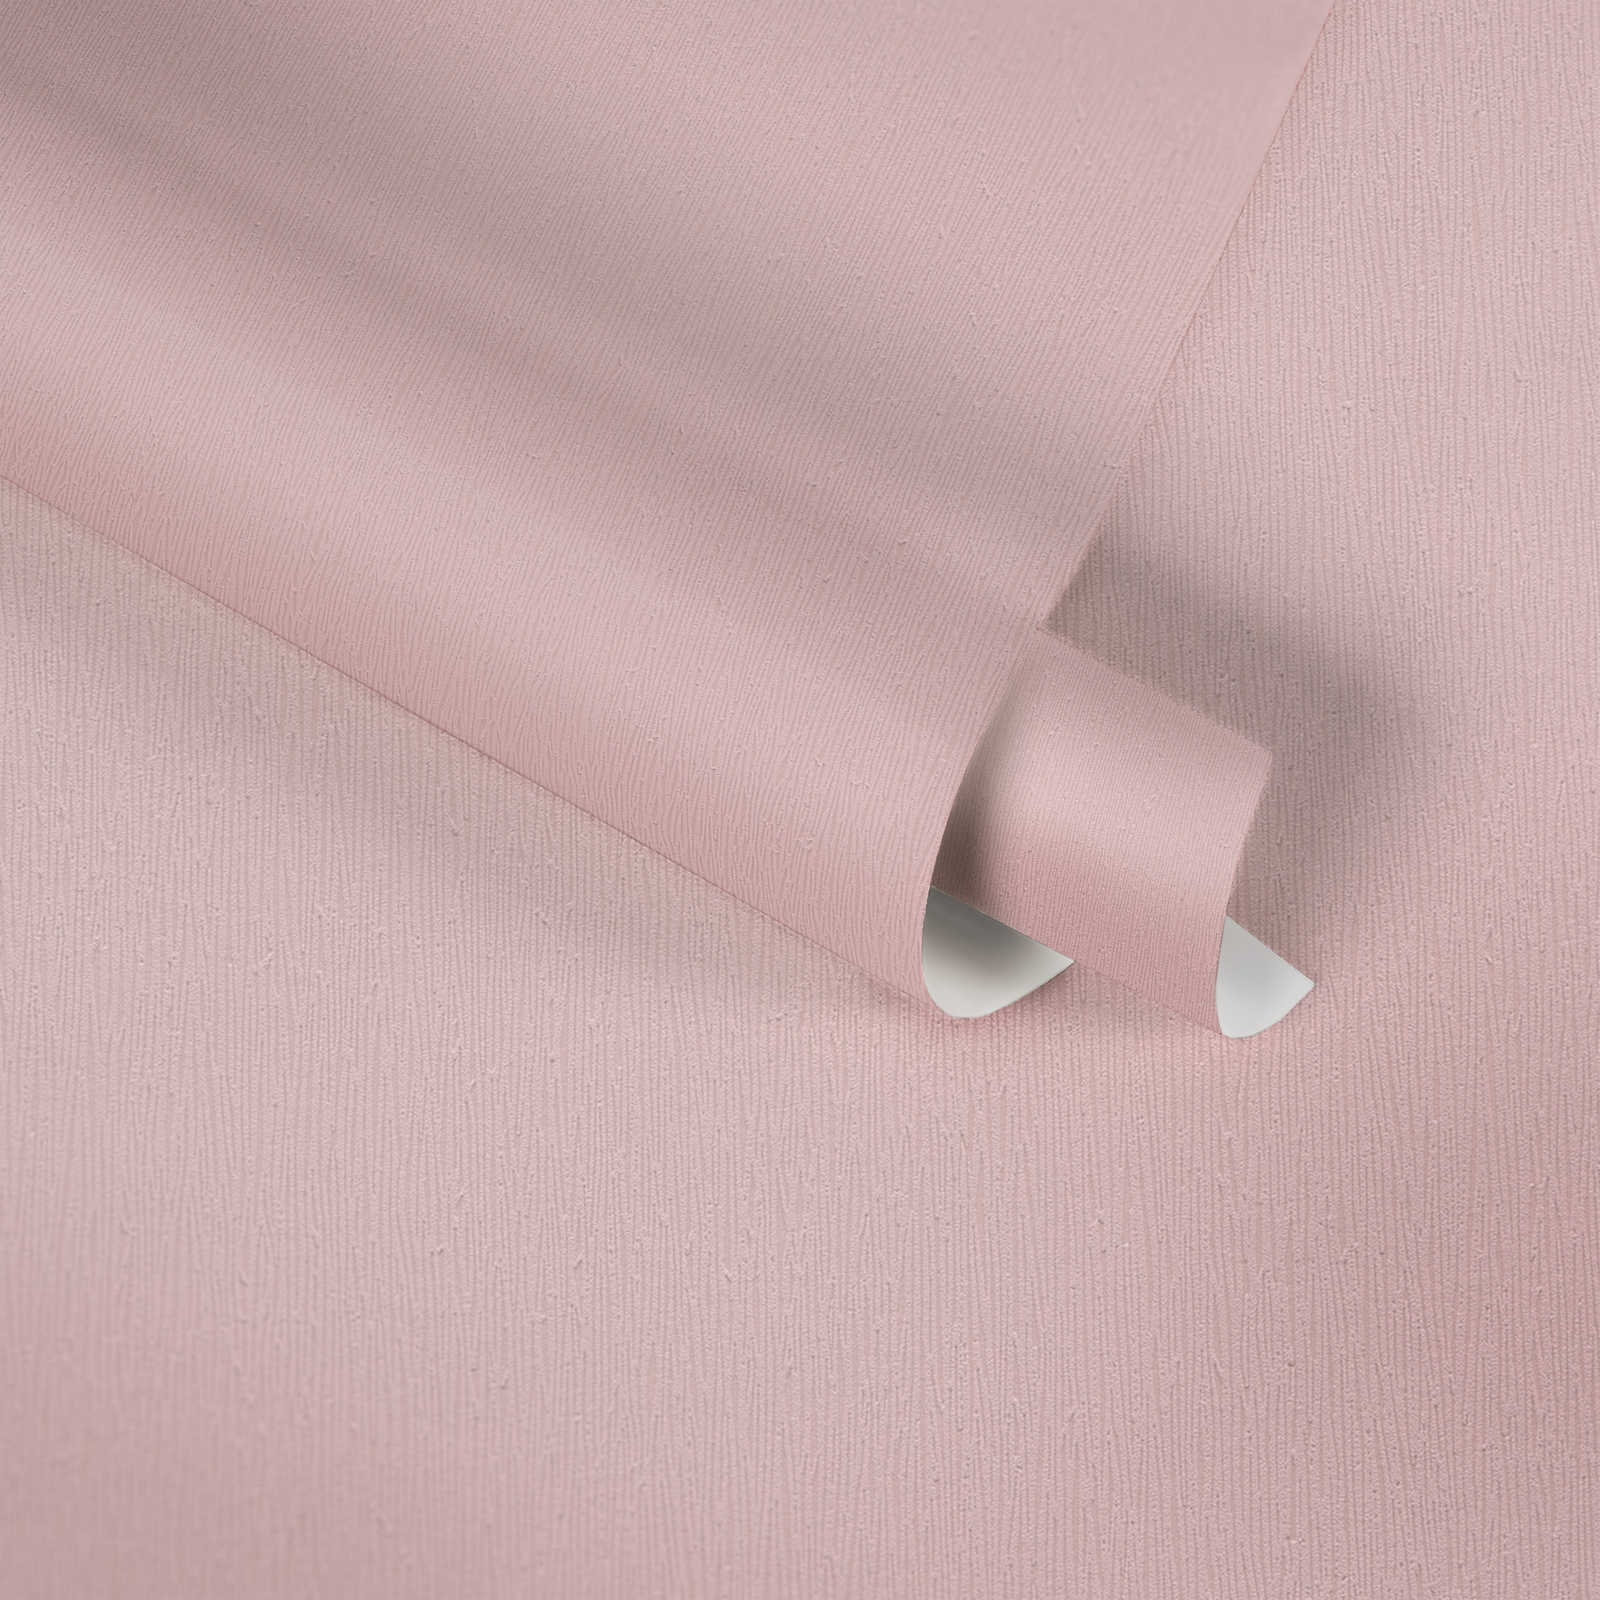             Carta da parati in tessuto non tessuto rosa baby con disegno monocromatico - Rosa
        